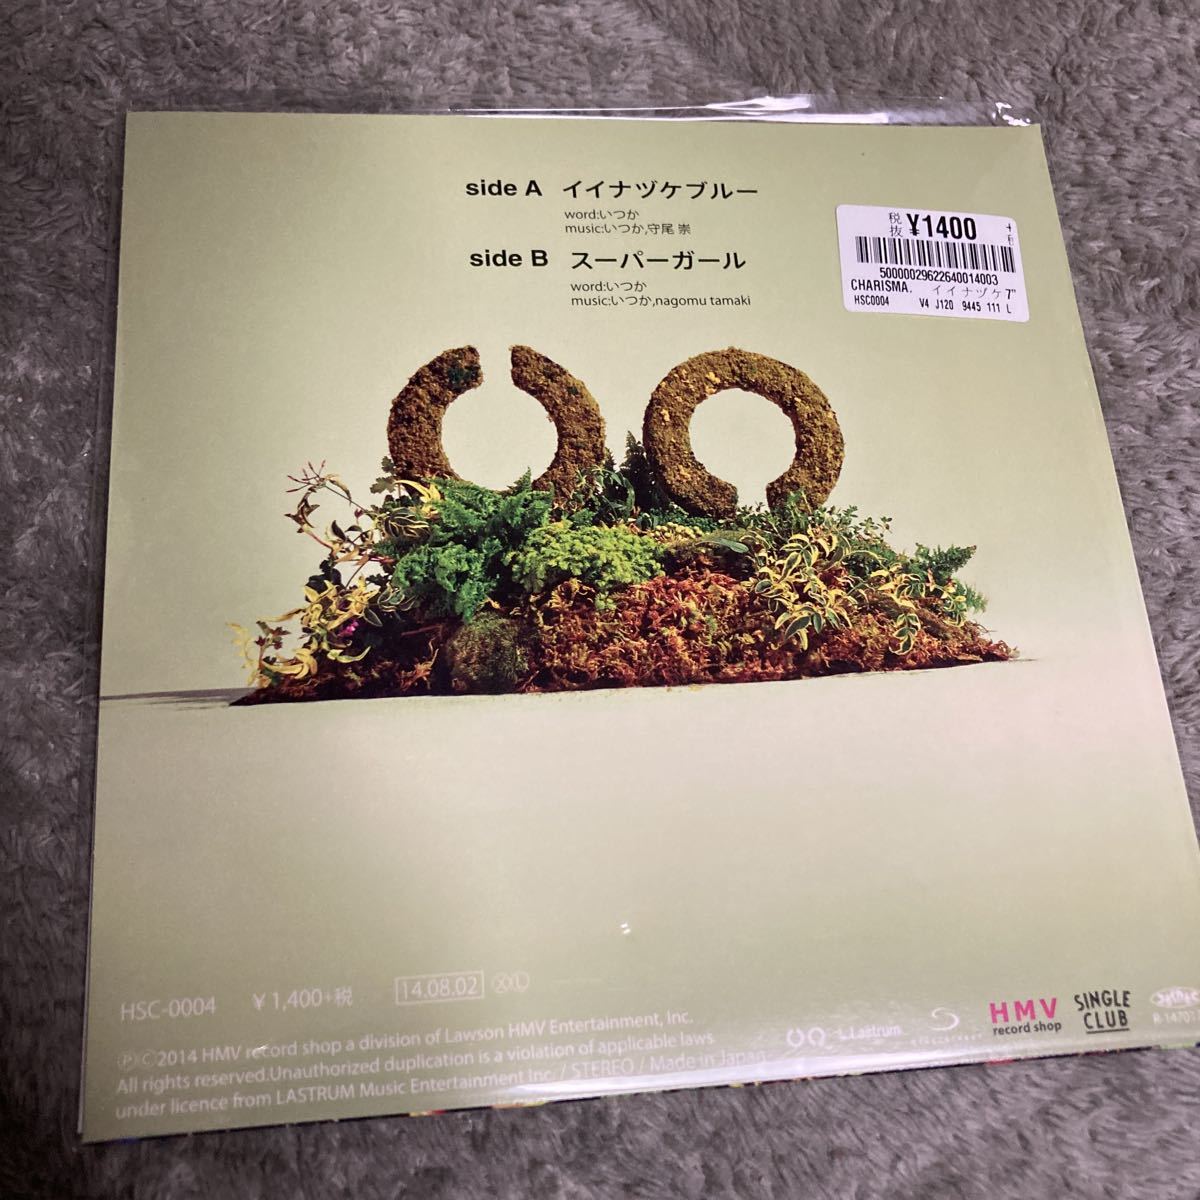 即決 イイナヅケブルー record shop渋谷限定7inch Charisma.com レコード 新品未開封